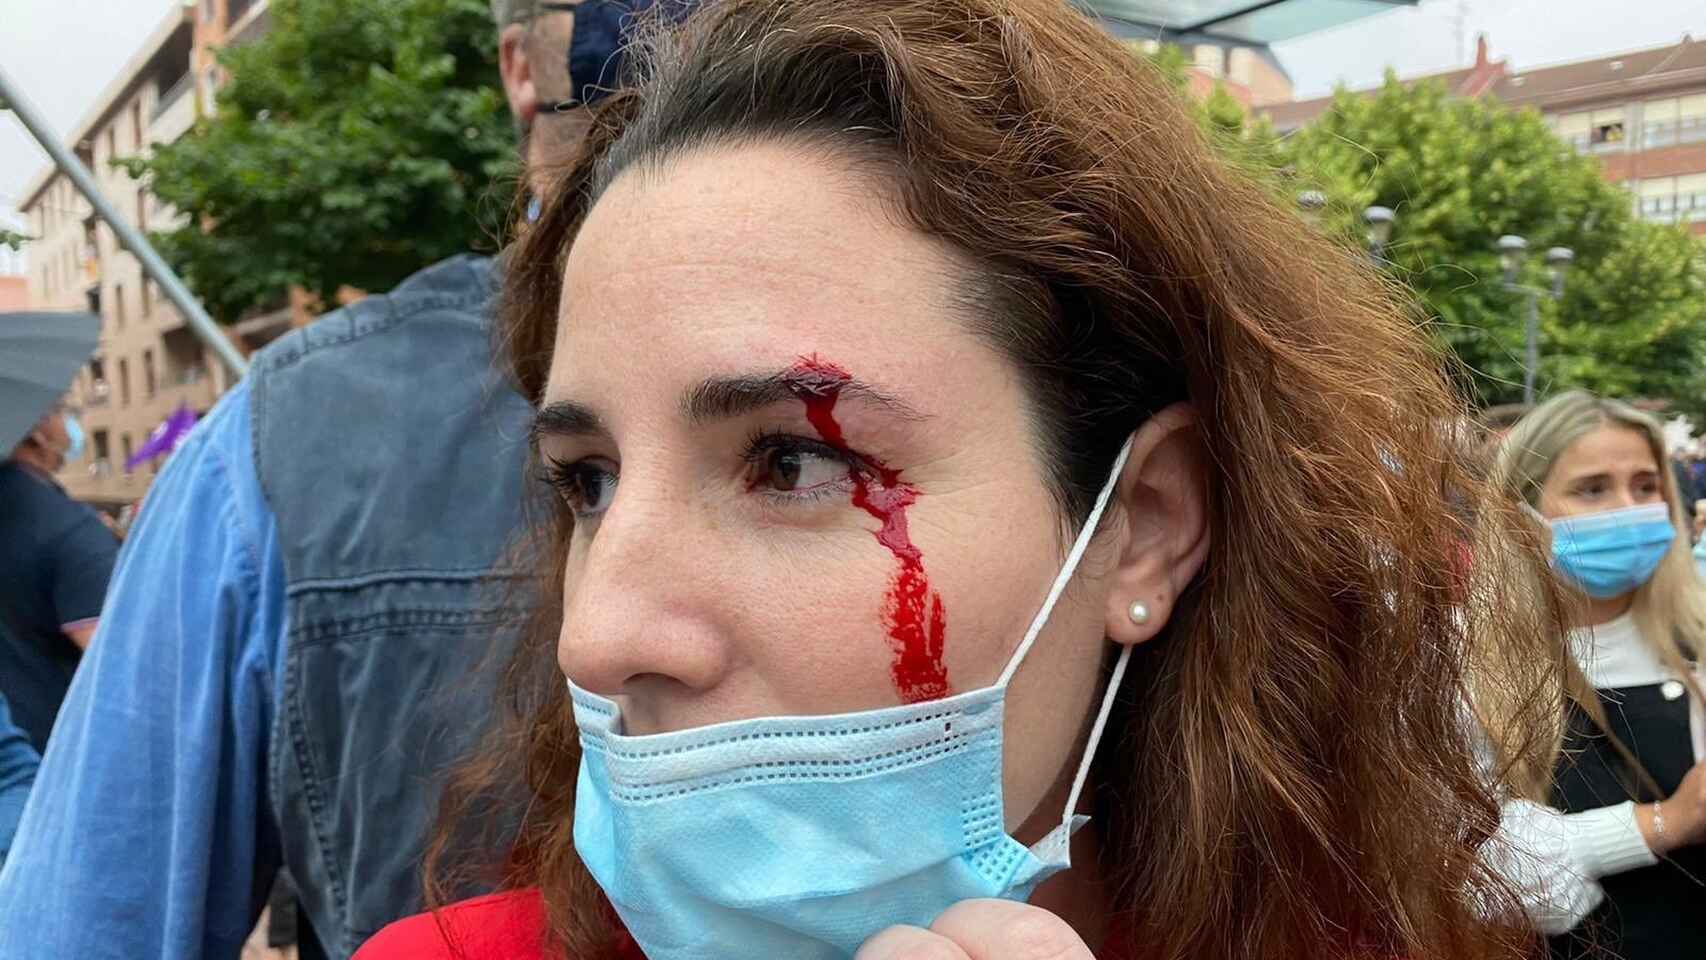 La diputada Rocío de Meer, herida tras recibir una pedrada en Sestao. Vox